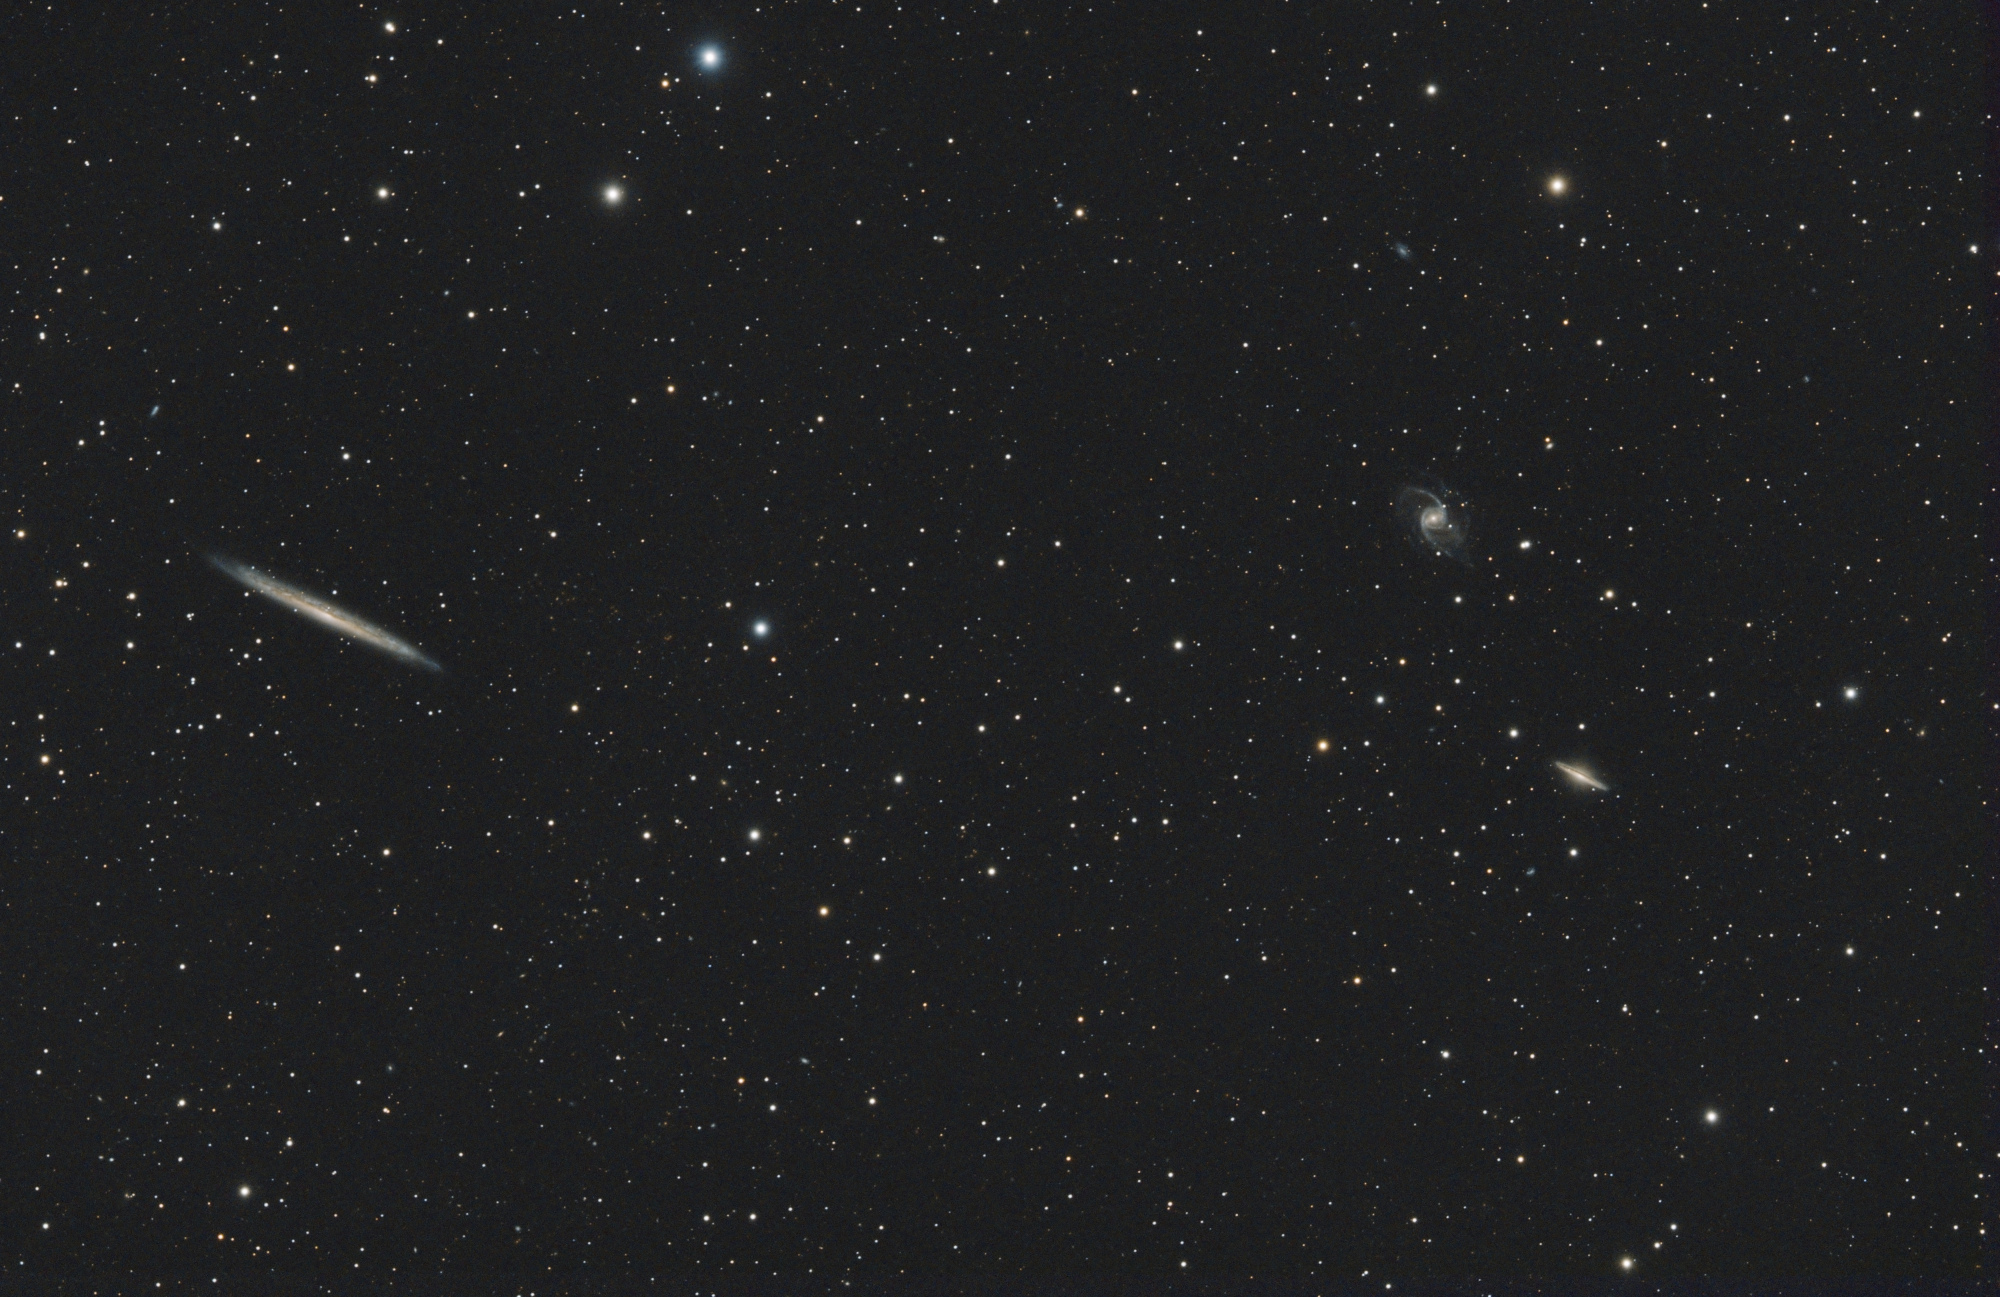 NGC_5907_&_NGC_5905_SIRIL-iris_mixt-cs5-4-FINAL-2b.jpg